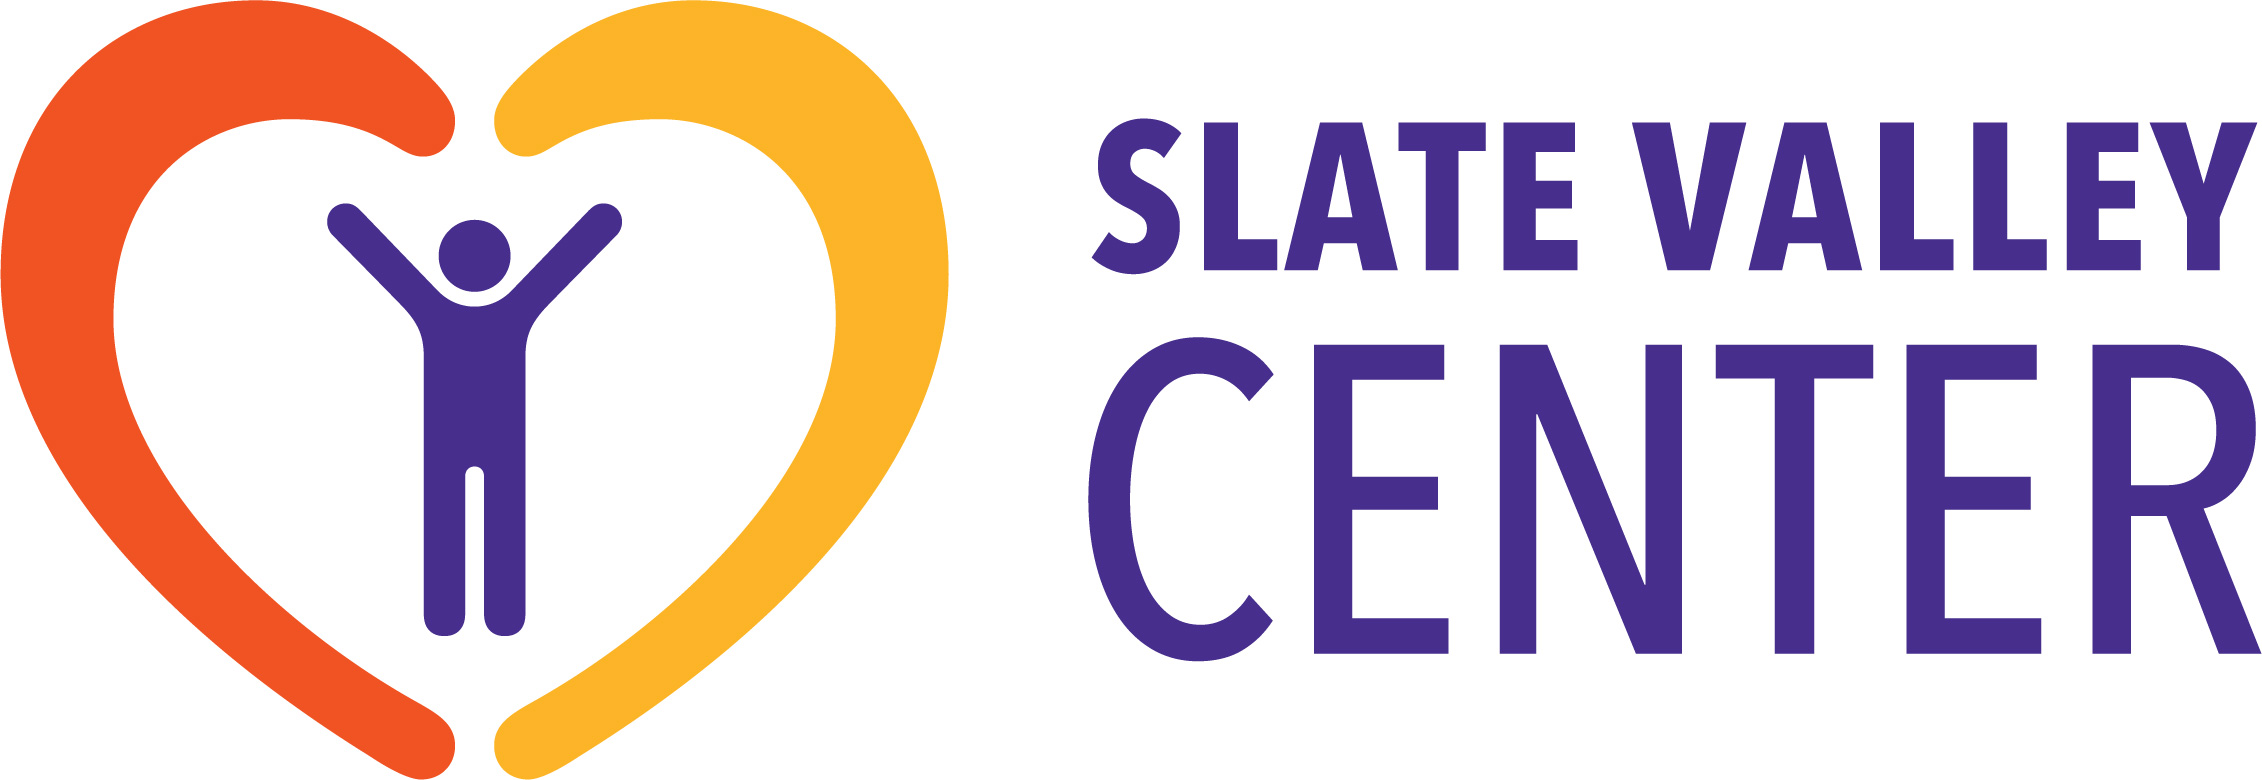 Slate Valley Center logo